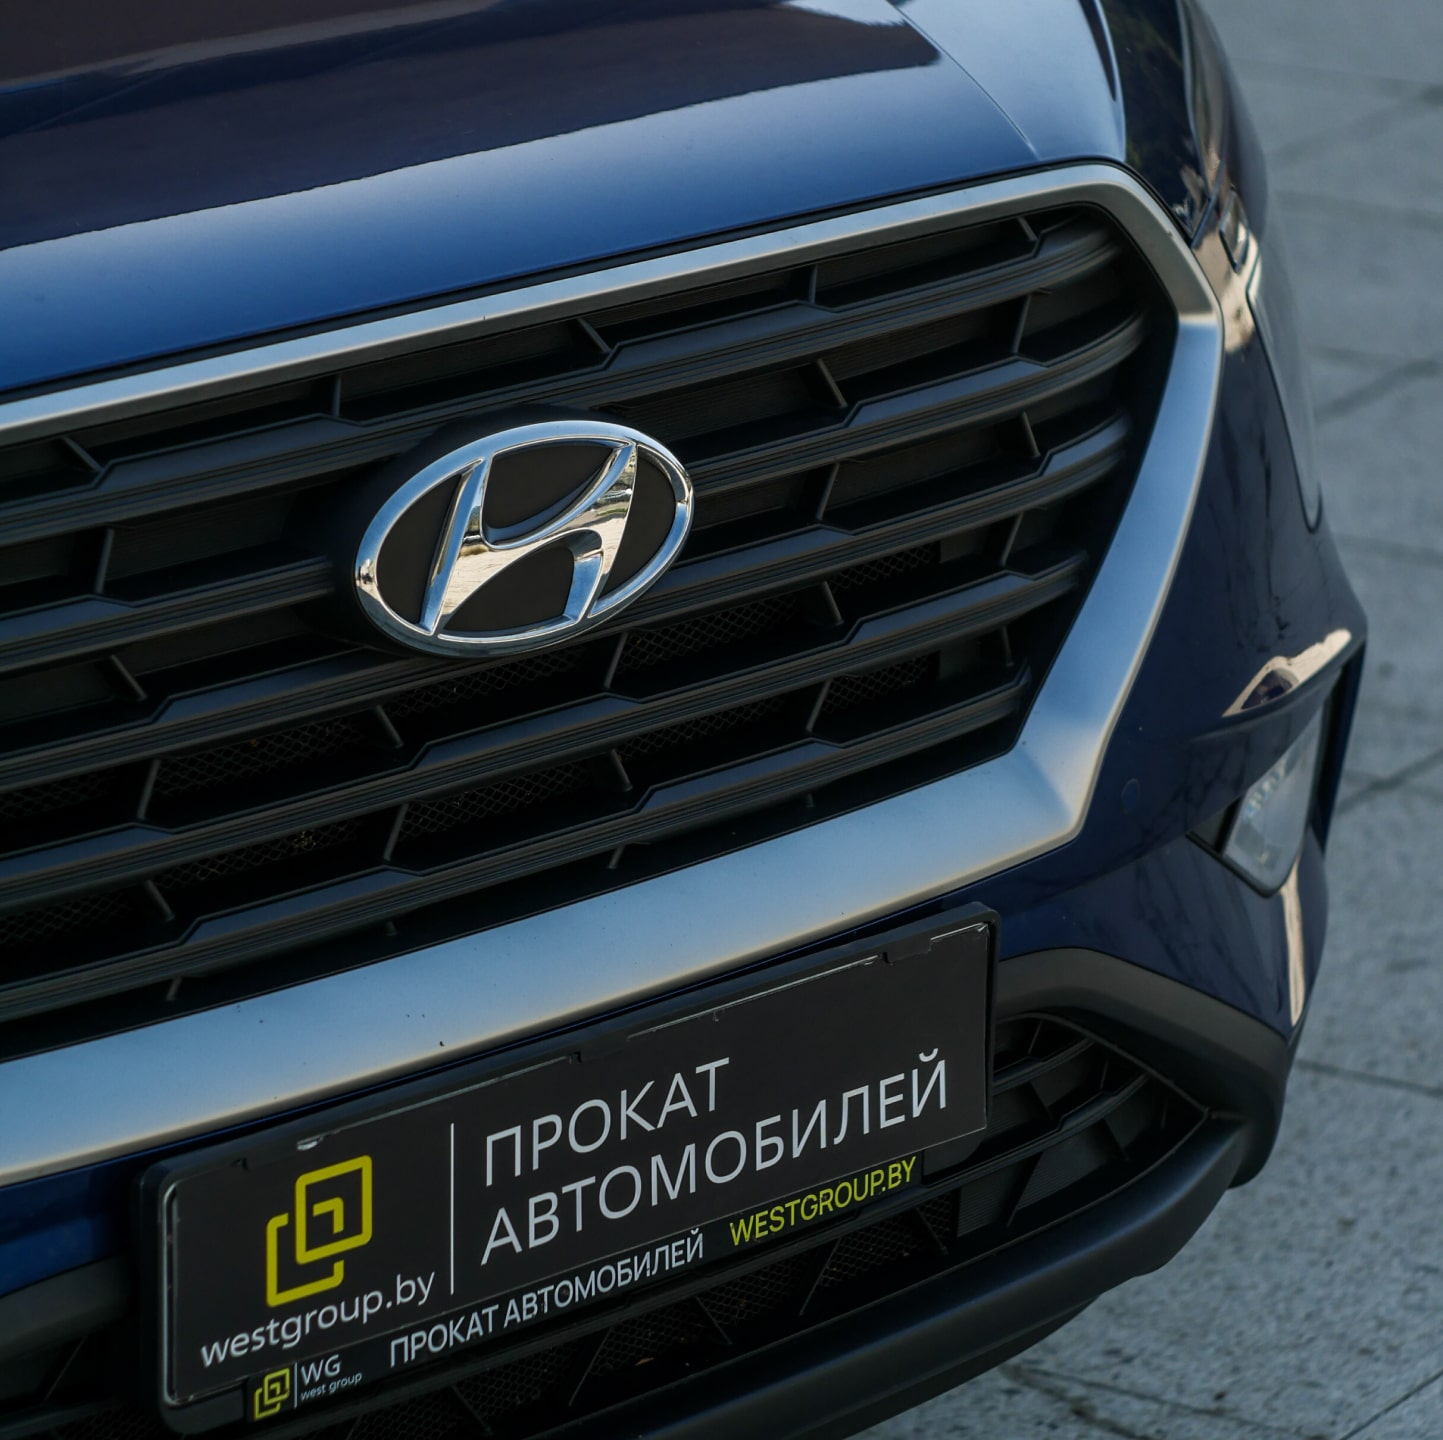 Аренда  Hyundai Creta New 2WD  6 класса 2022 года в городе Минск от 59 $/сутки,  двигатель: Бензин , объем 1.6 AT литров, КАСКО (Мультидрайв), без водителя, вид 3 - West Group